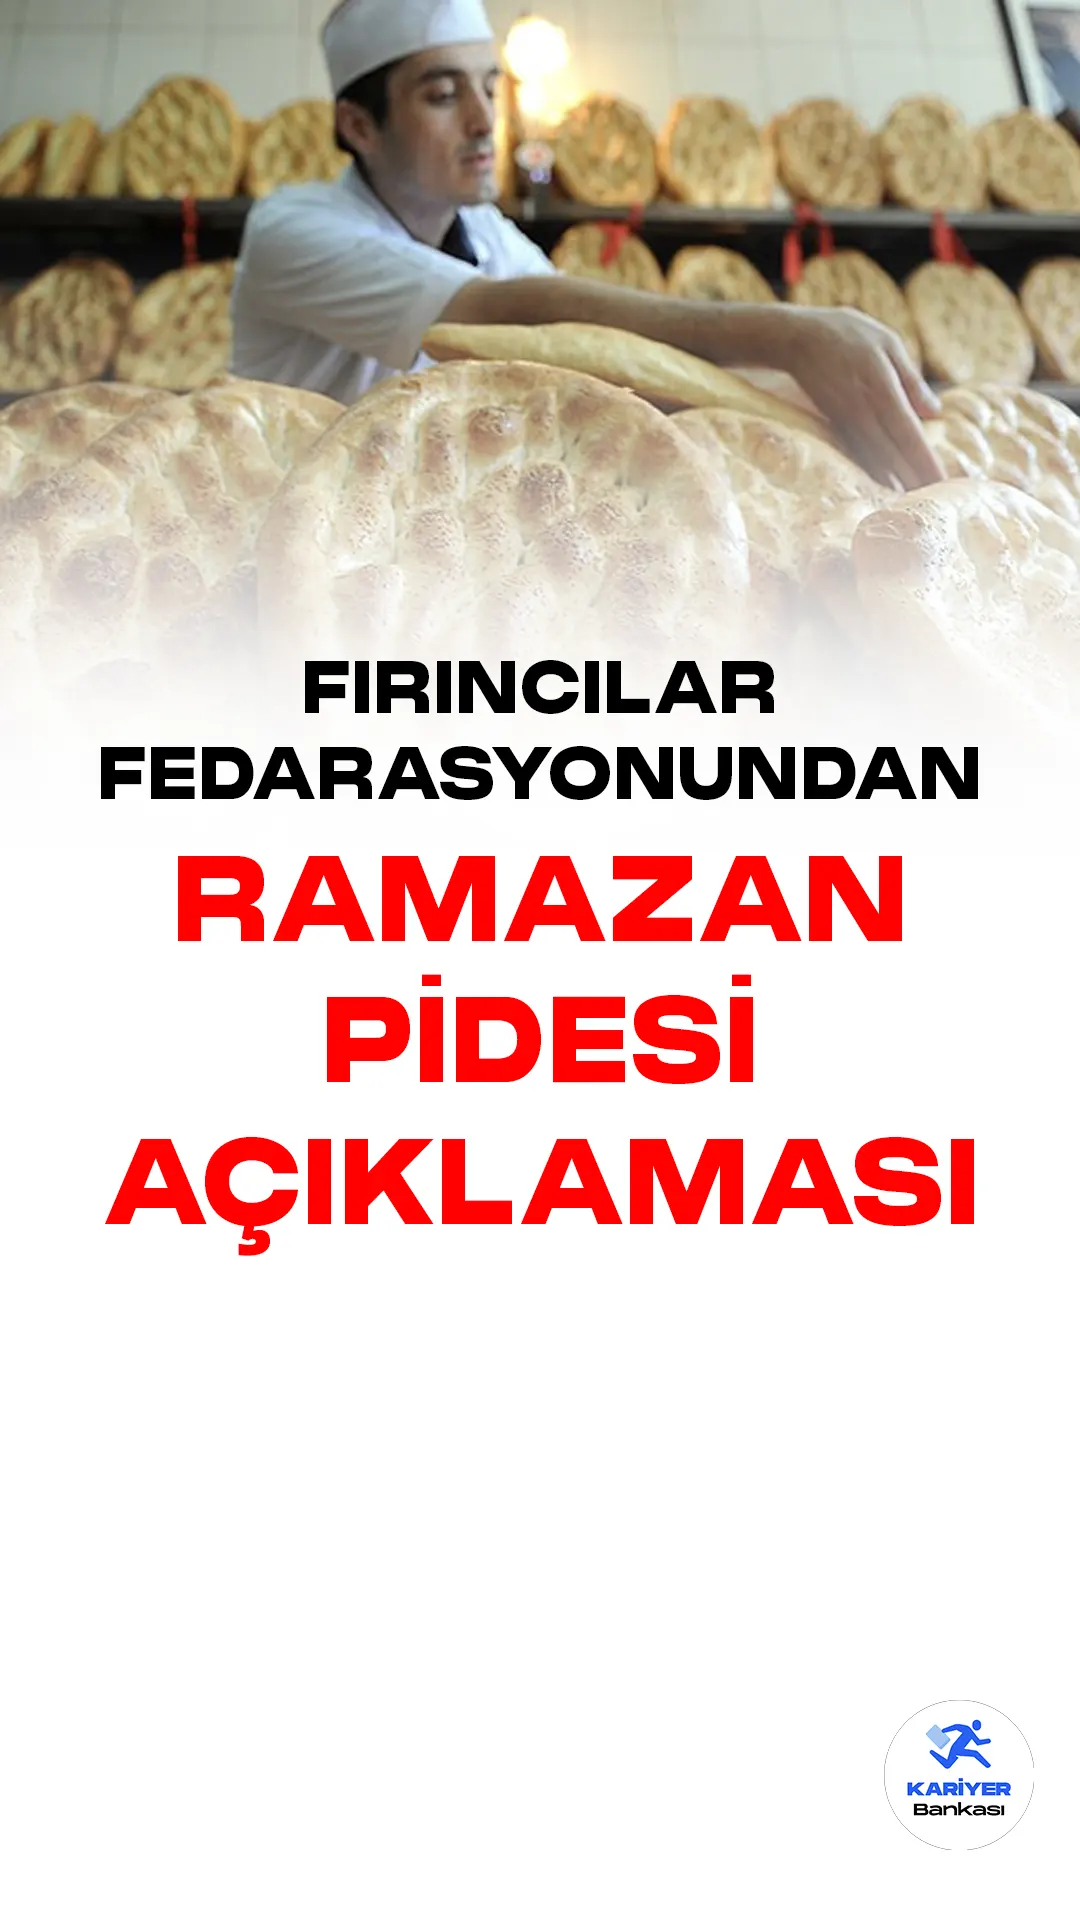 Türkiye Fırıncılar Federasyonu Başkanı Halil İbrahim Balcı, Ramazan pidesi fiyatlarının önümüzdeki hafta belirleneceğini açıkladı.